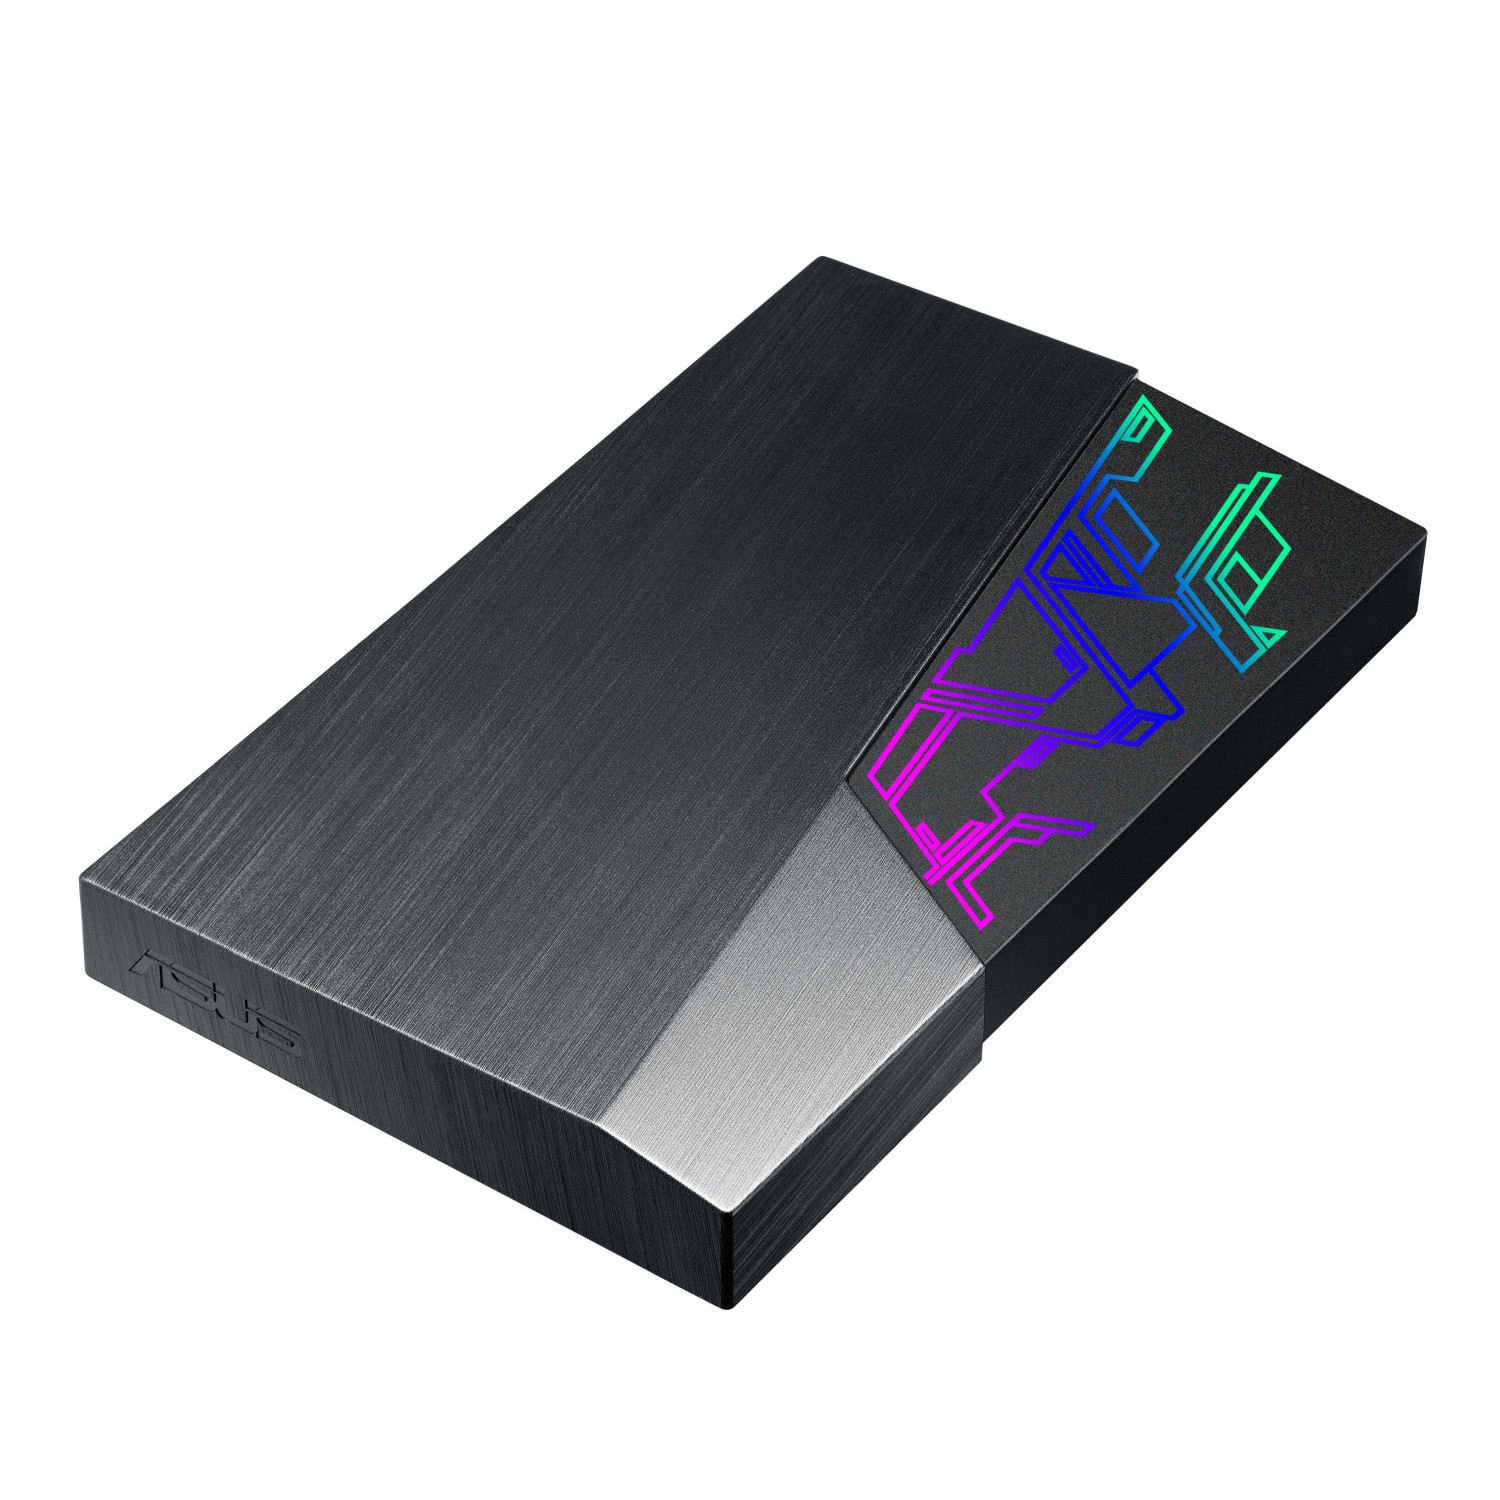 Външен хард диск ASUS FX HDD 1TB USB3.1 Gen1 256-bit AES Encryption Aura Sync RGB